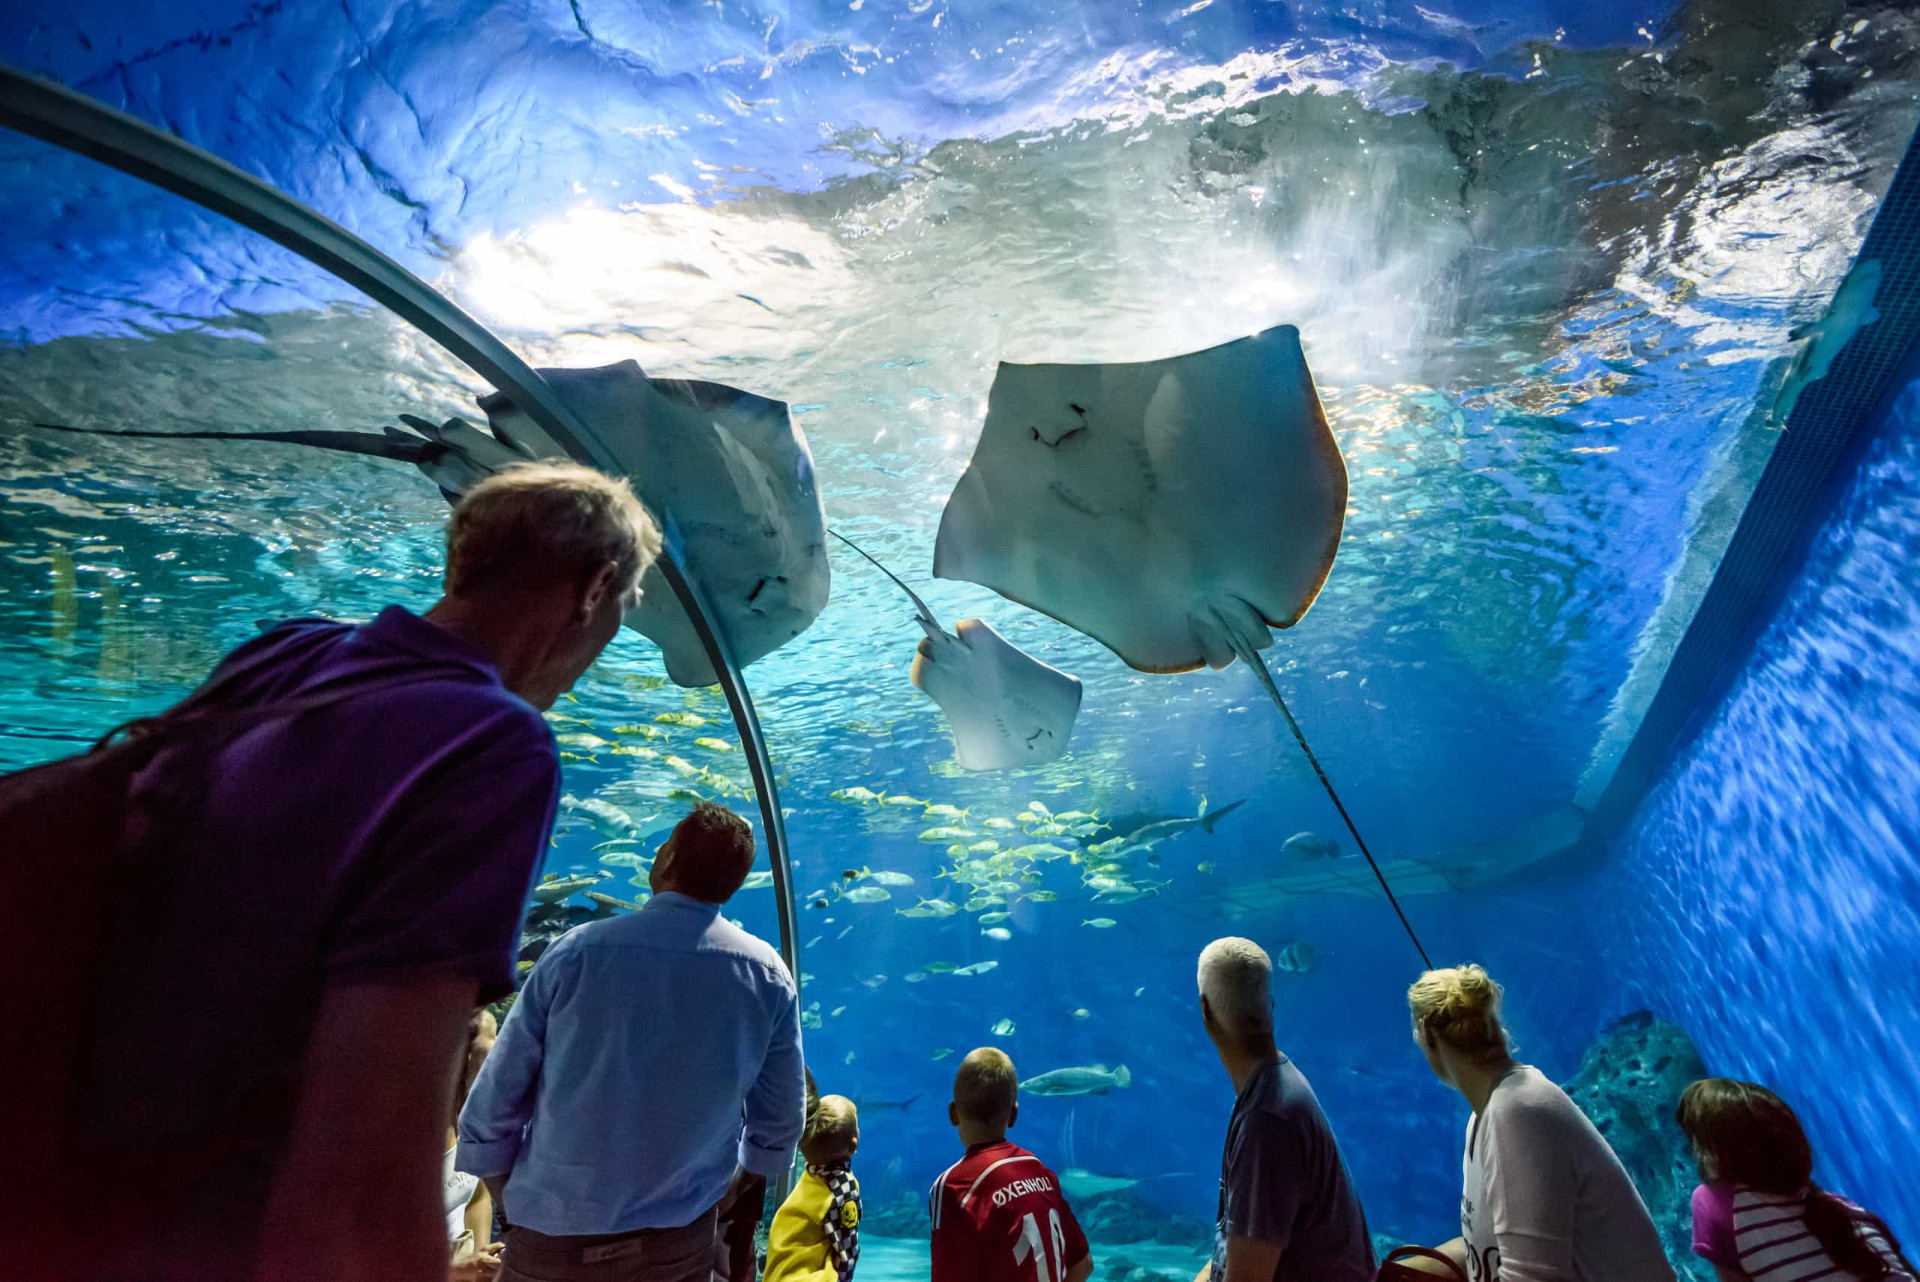 <p>L'Aquarium national du Danemark est le plus grand aquarium d'Europe du Nord. Il est connu sous le nom de Den Blå Planet, que l'on peut traduire par "Planète bleue". Cinq sections principales représentant cinq habitats différents, divisées en 53 expositions, émerveillent les visiteurs par la richesse de leur vie marine. L'une des attractions favorites est l'étonnant Ocean Tank (photo), où requins et raies semblent planer au-dessus de la tête des visiteurs.</p><p>Tu pourrais aussi aimer:<a href="https://www.starsinsider.com/n/406684?utm_source=msn.com&utm_medium=display&utm_campaign=referral_description&utm_content=472310v3"> À 50 ans, ces célébrités sont à tomber!</a></p>